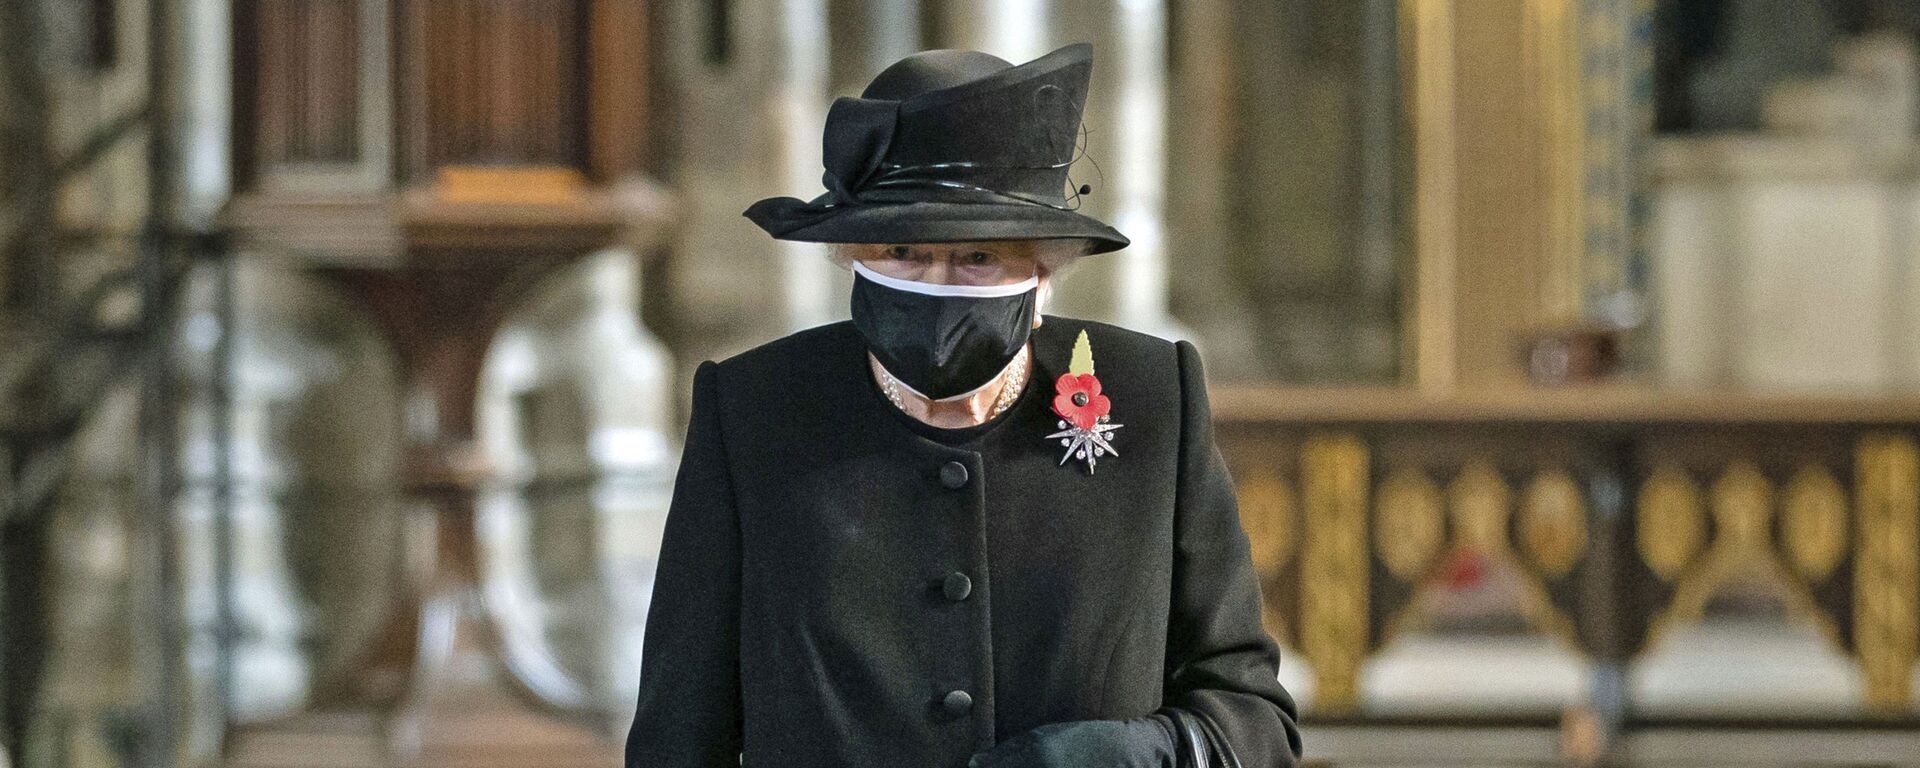 Королева Великобритании Елизавета II на церемонии в Вестминстерском аббатстве - Sputnik Արմենիա, 1920, 06.03.2021